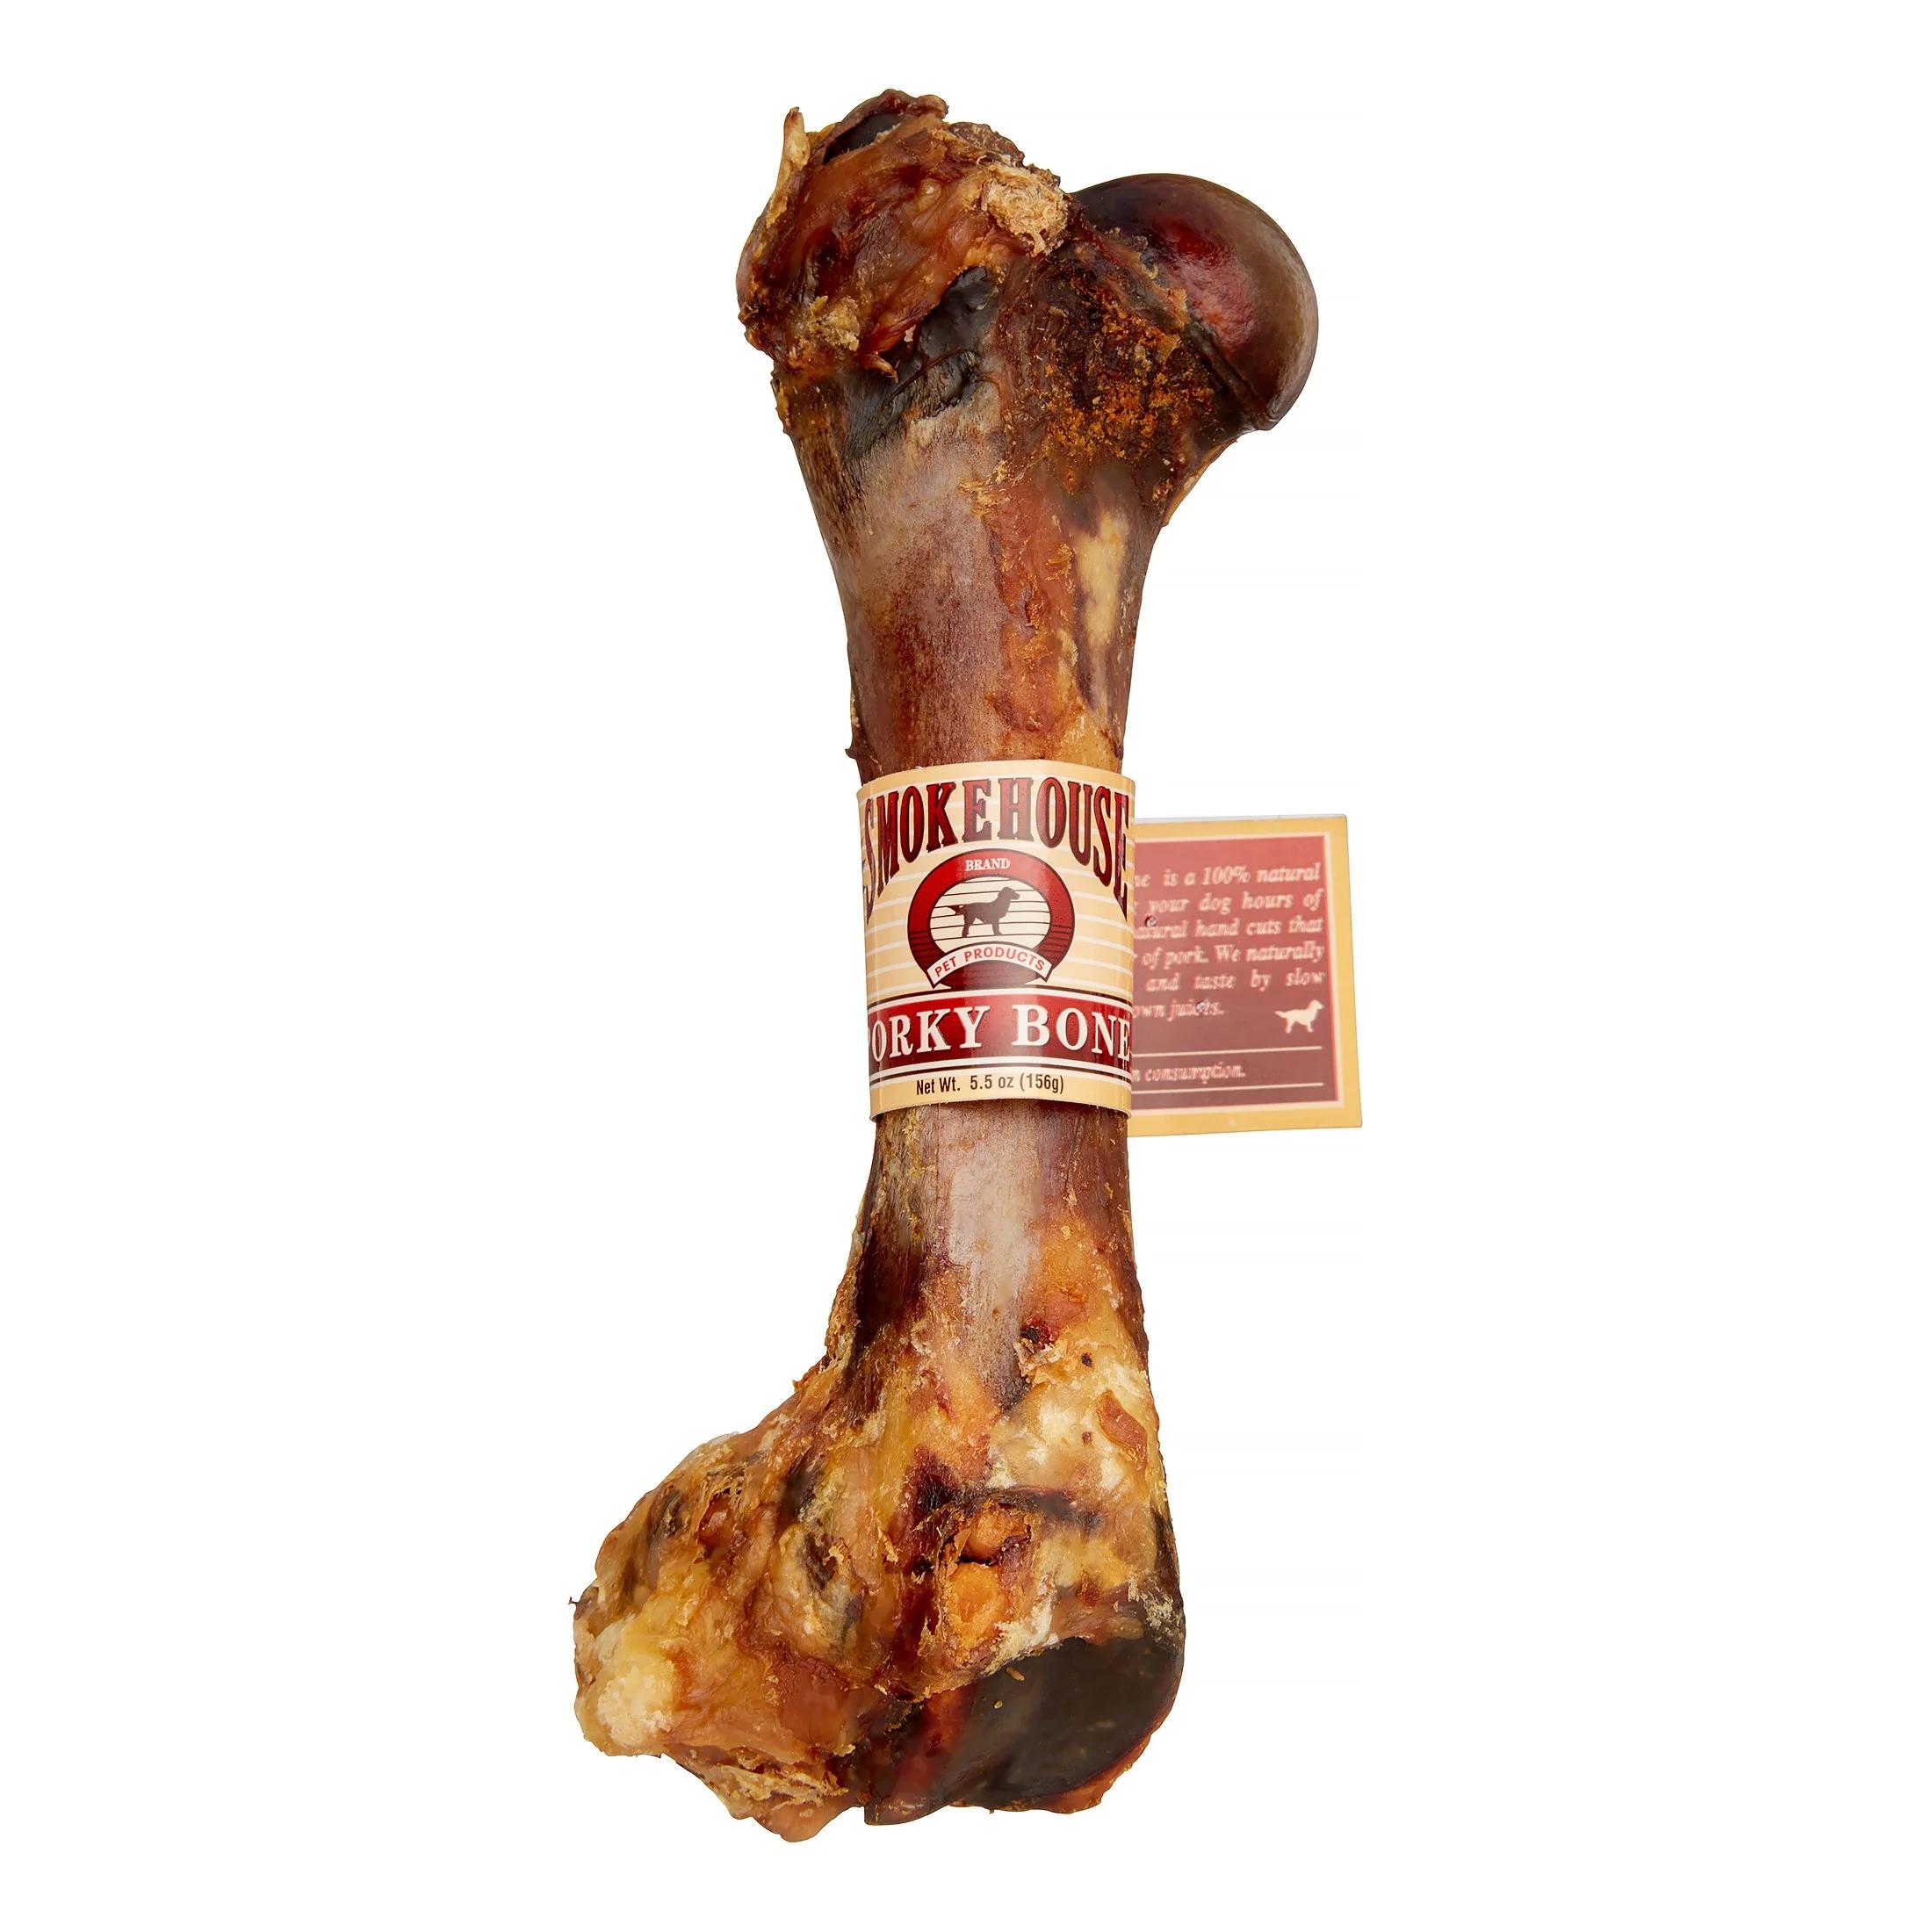 smokehouse porky bone - Are Smokehouse porky bones safe